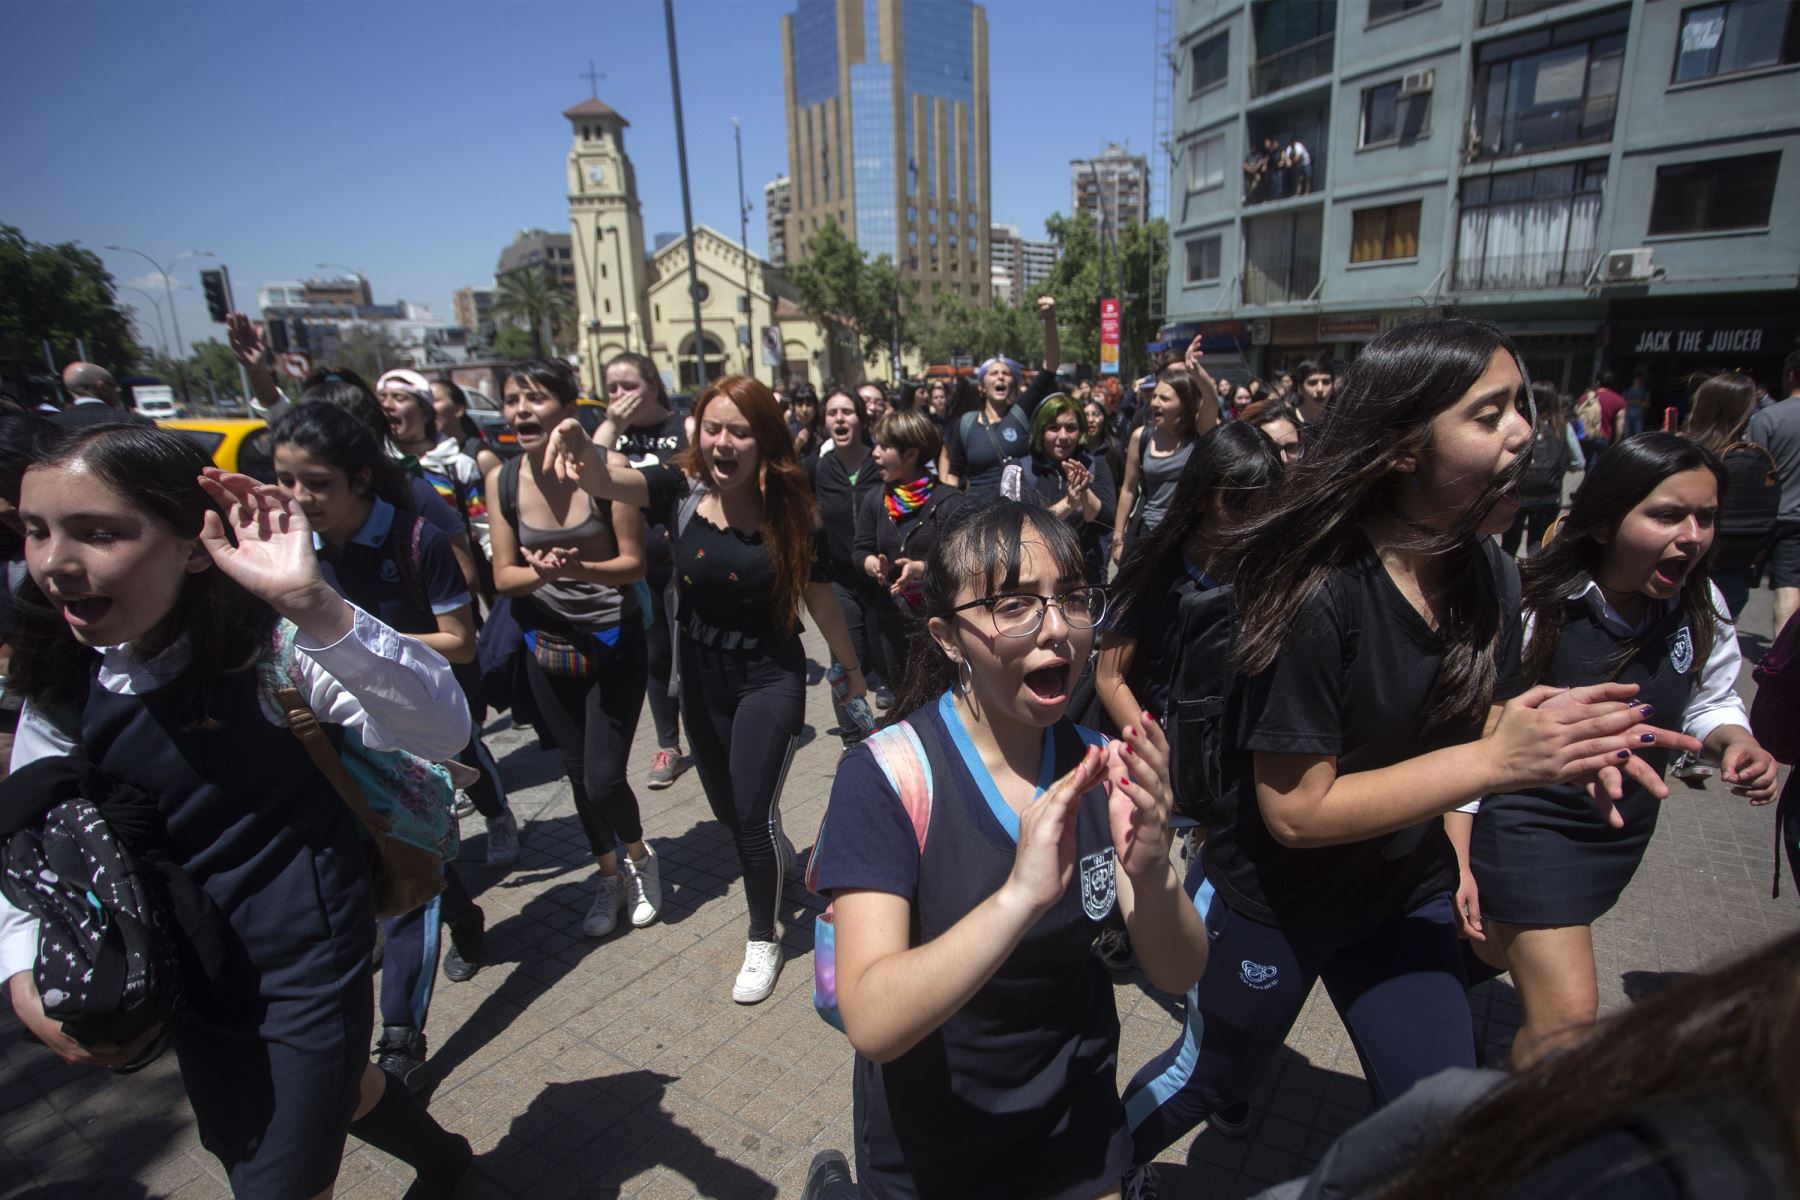 Los estudiantes se manifestaron durante una protesta contra las políticas del gobierno fuera del Centro Costanera en Santiago.
Foto: AFP